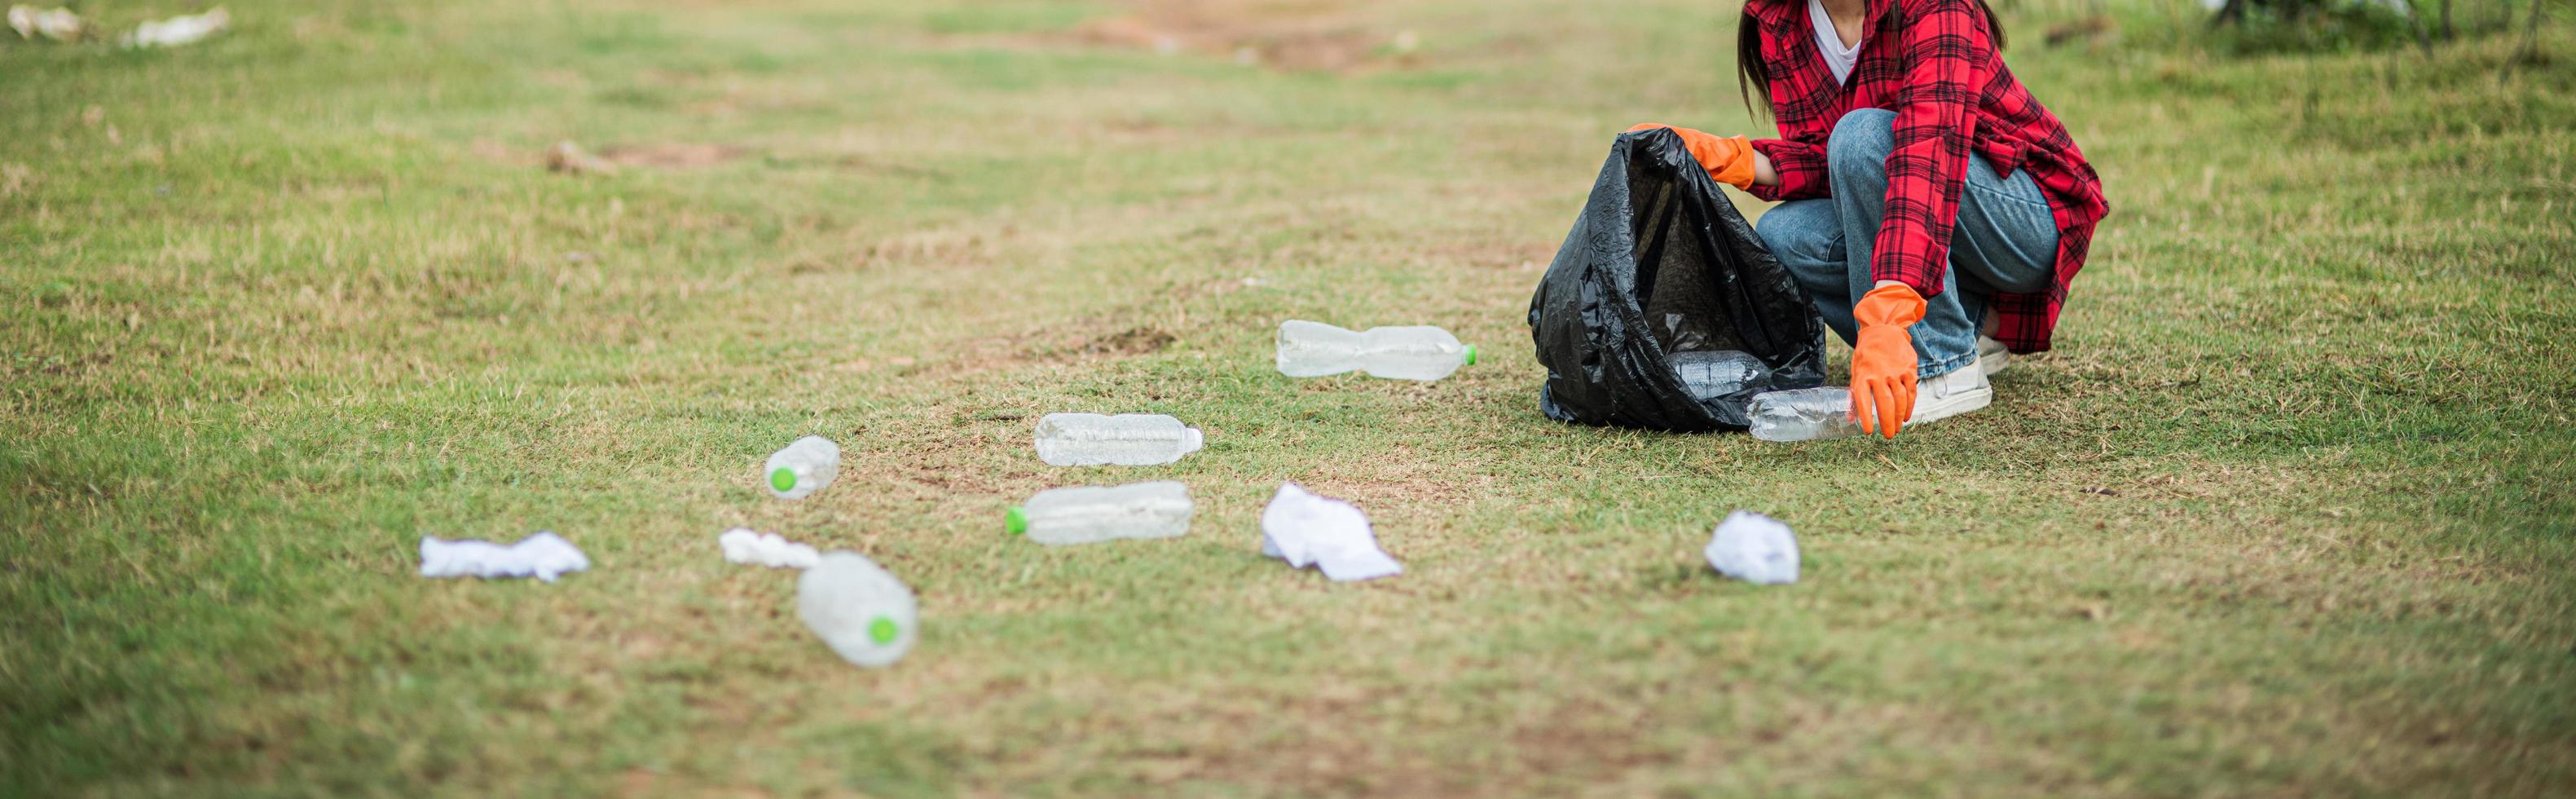 mujer recogiendo basura en una bolsa negra. foto